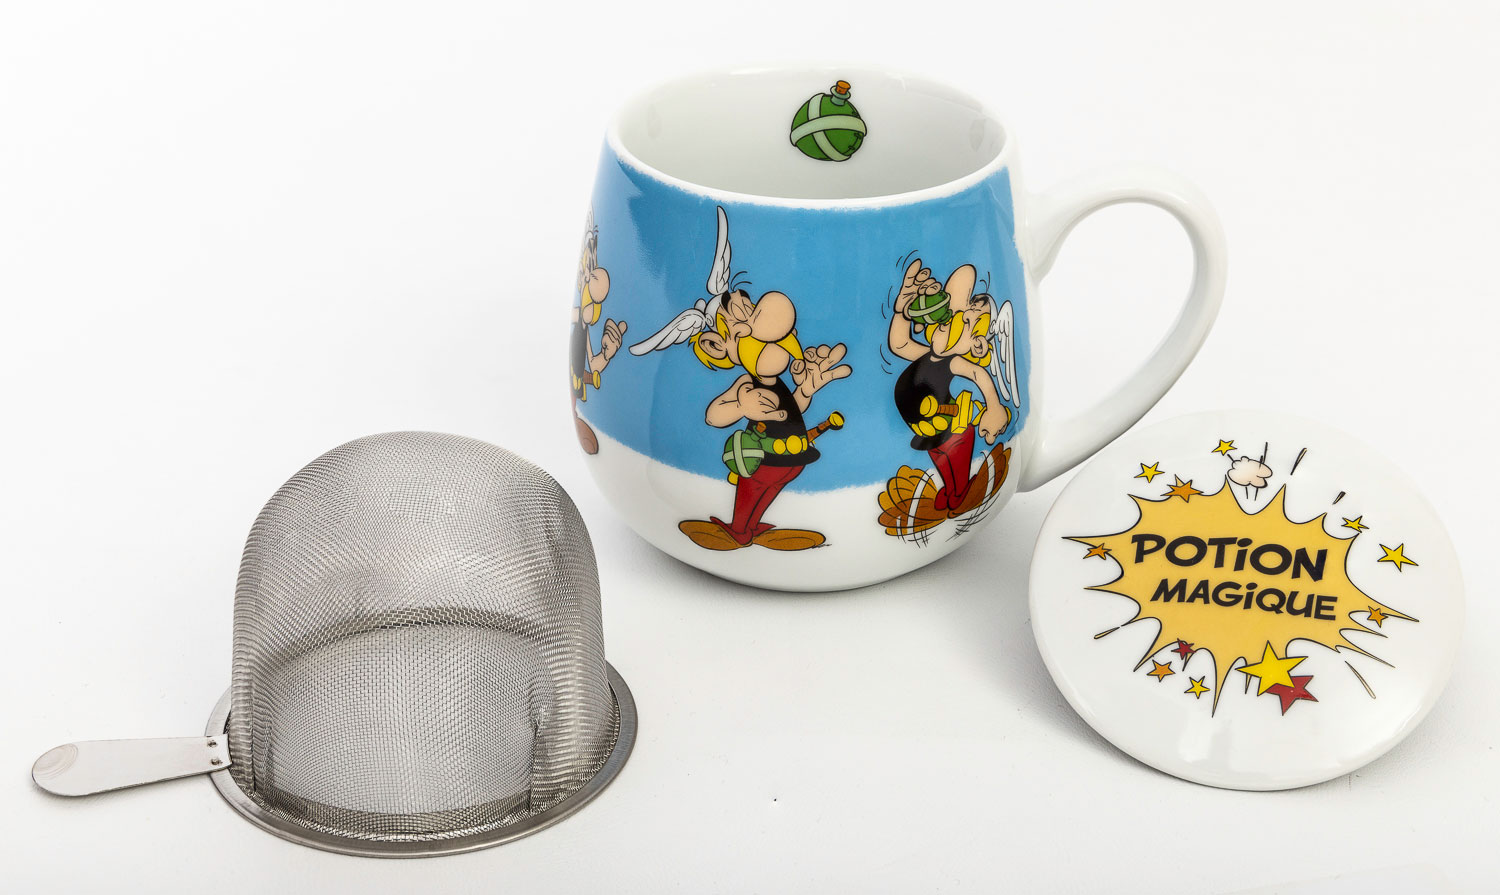 Uderzo snuggle Tea mug : Asterix, magic potion